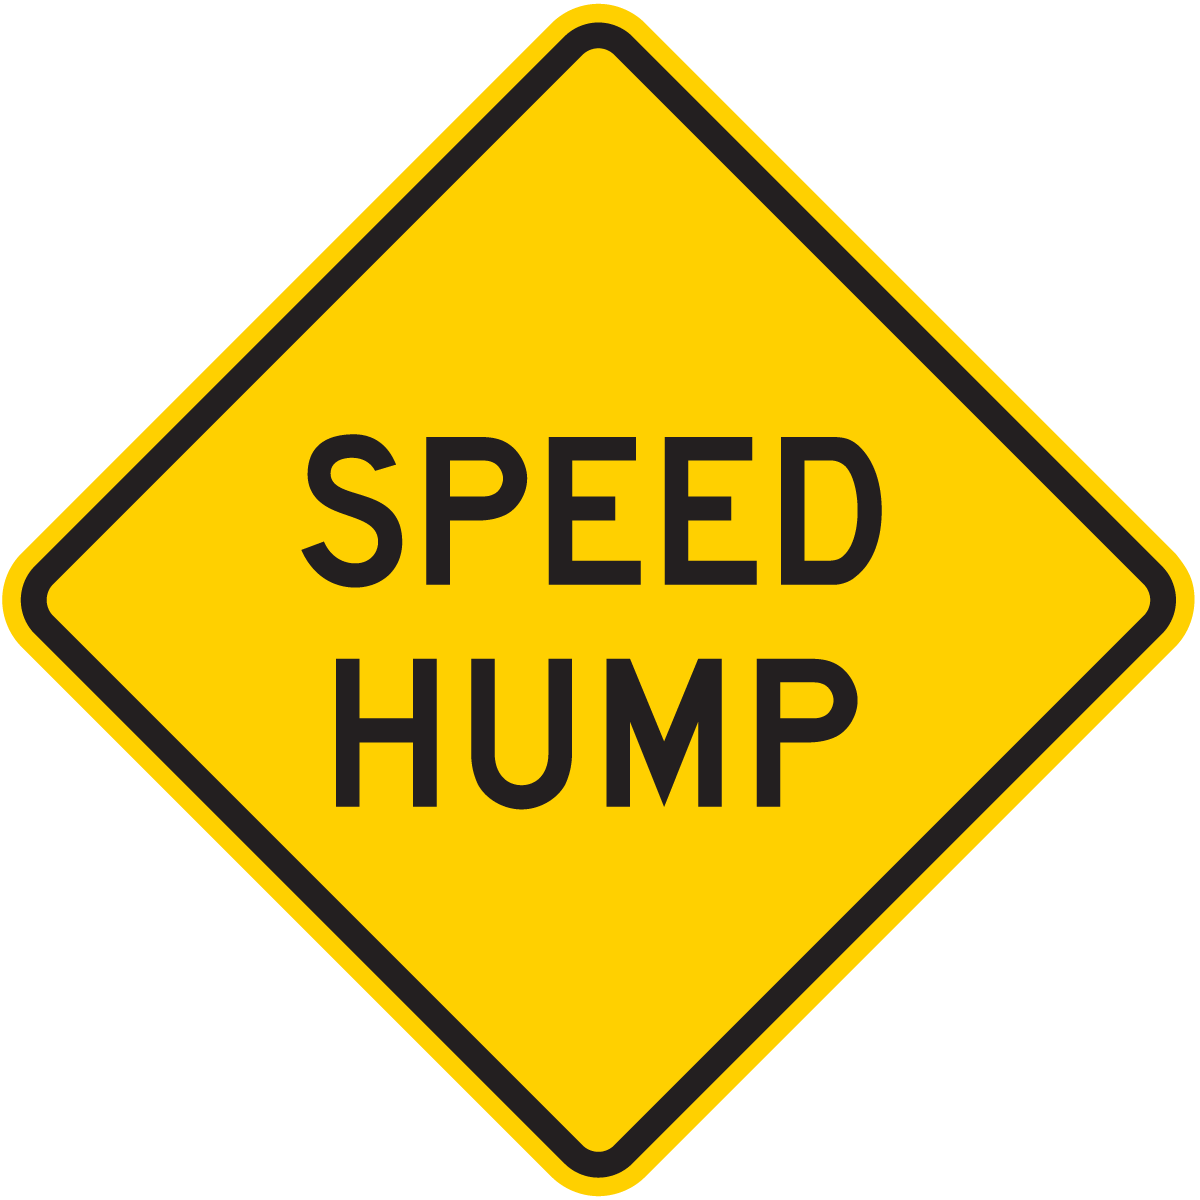 W17-1 Speed Hump